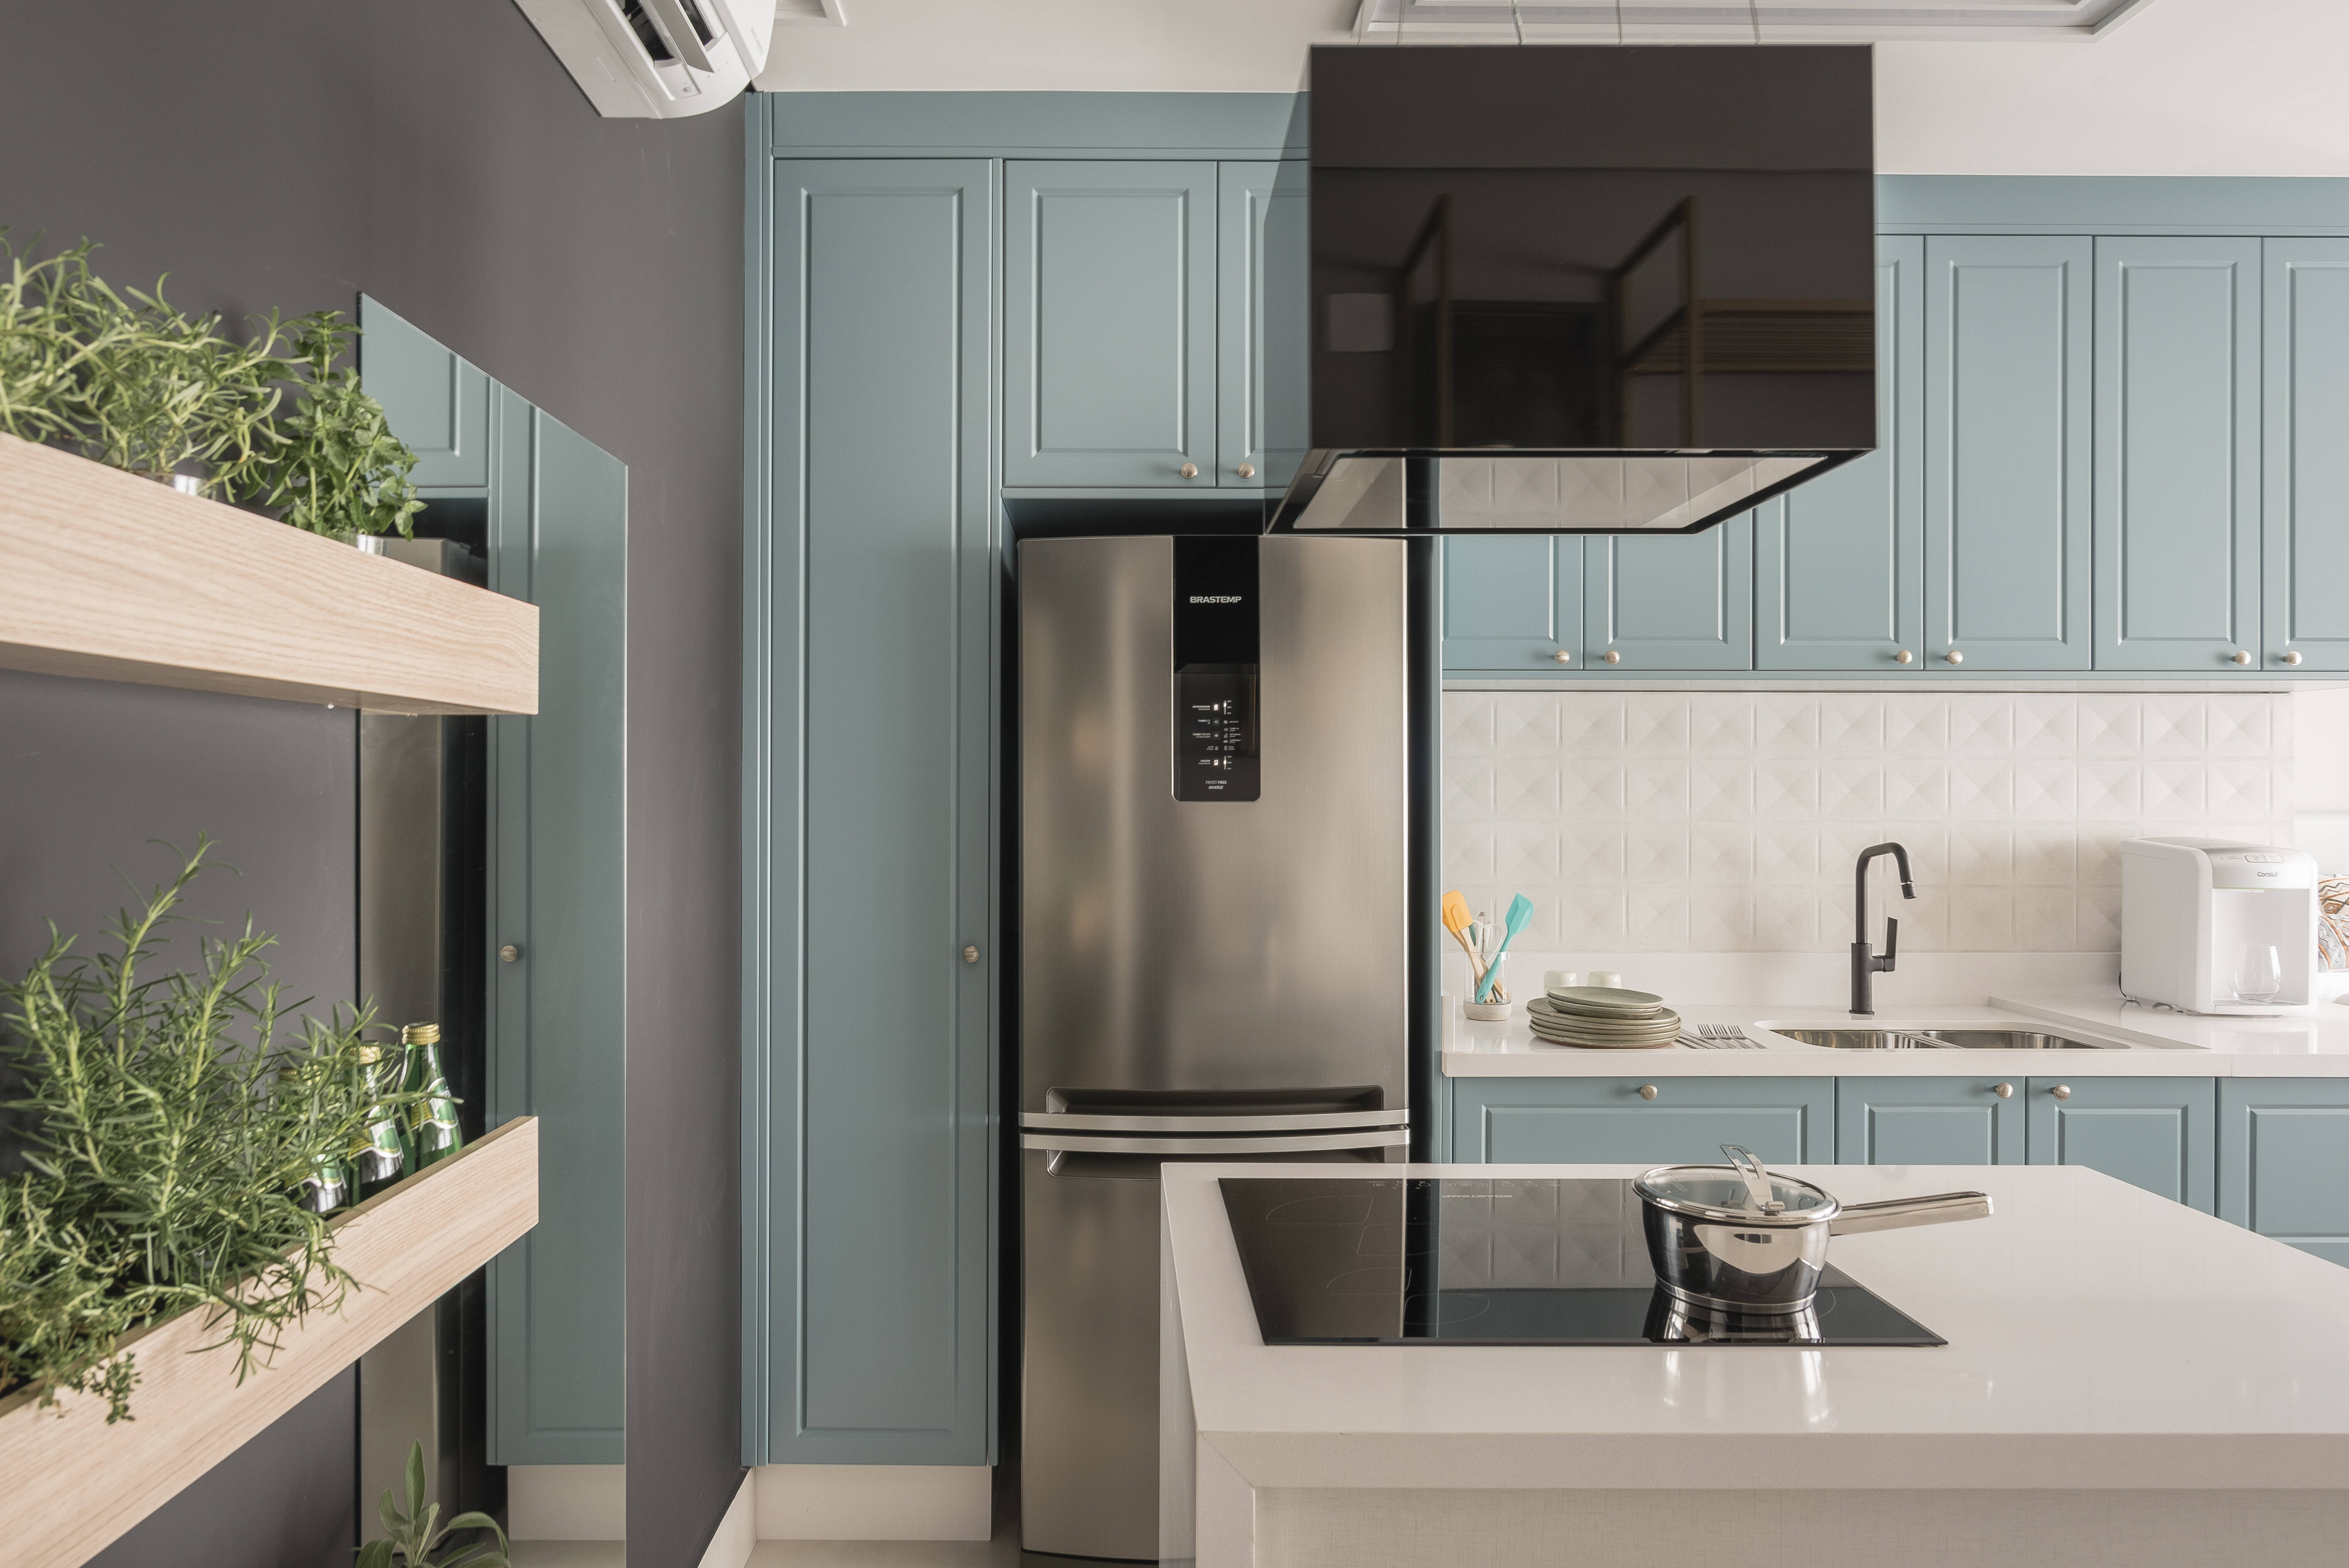 Pontos de cor da cozinha podem se concentrar nos eletrodomésticos ou nas cores dos armários. Foto: Henrique Ribeiro/Meet Arquitetura